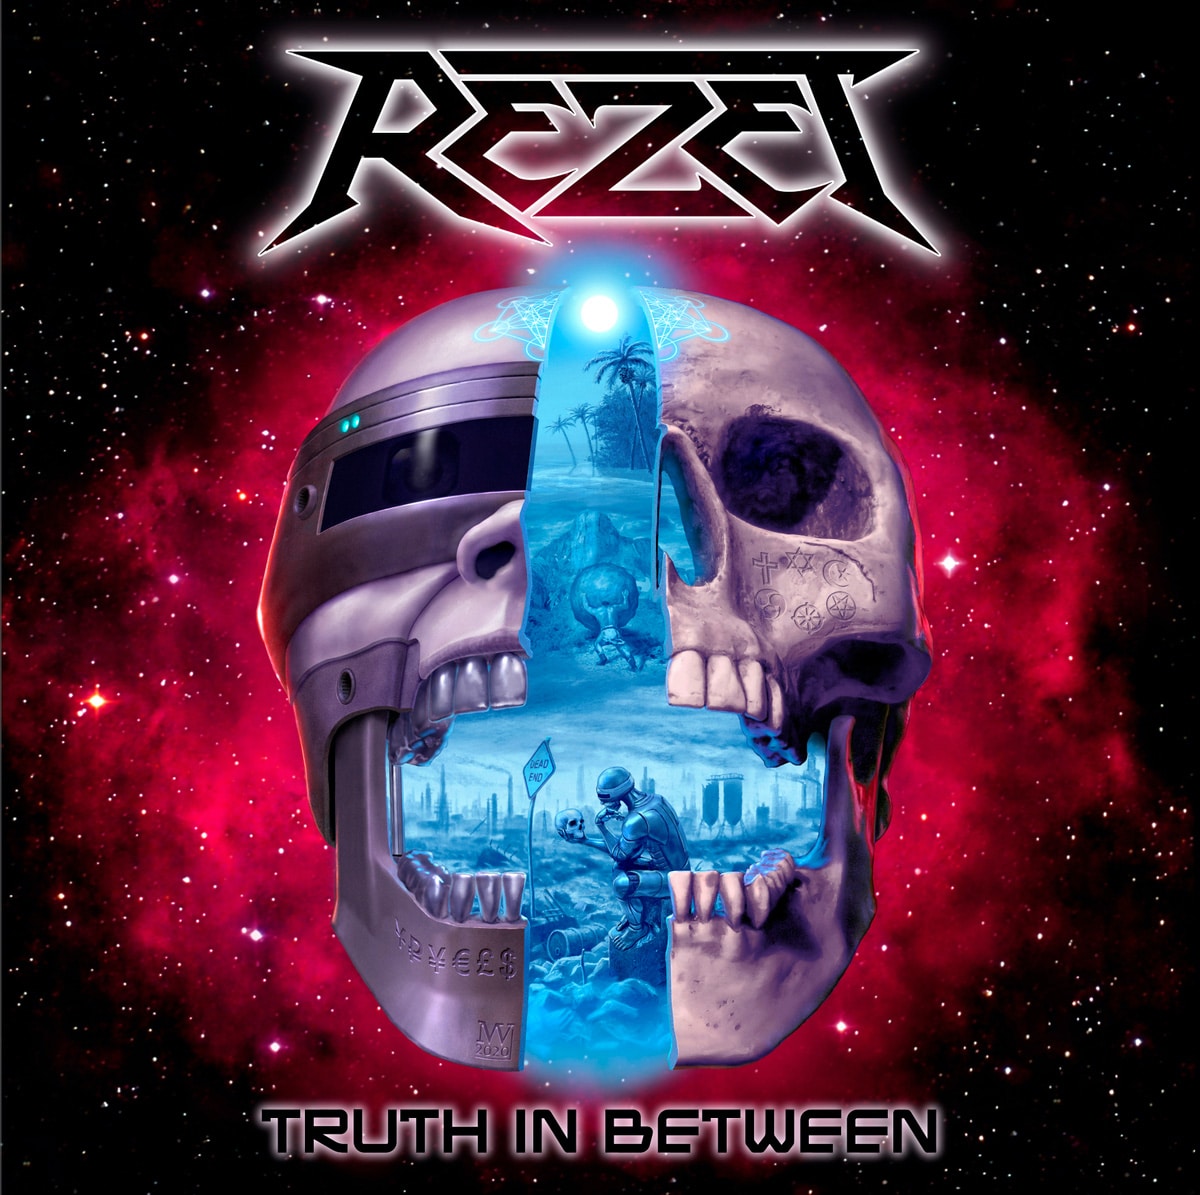 rezet-truth-in-between-album-cover